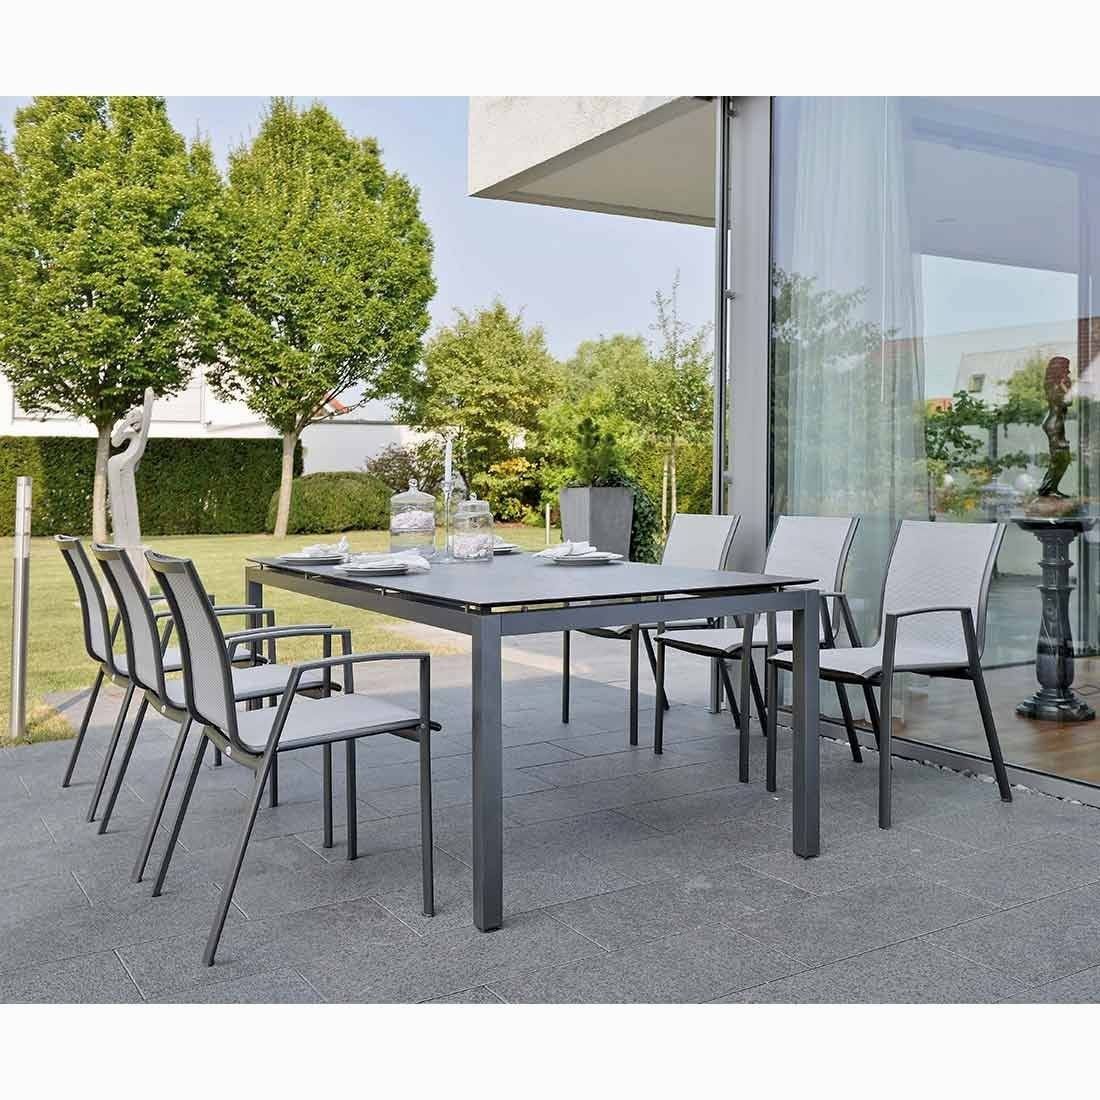 Gartenmöbel Polyrattan Grau Luxus 12 Gartenmöbel Tisch Und Stühle Neu